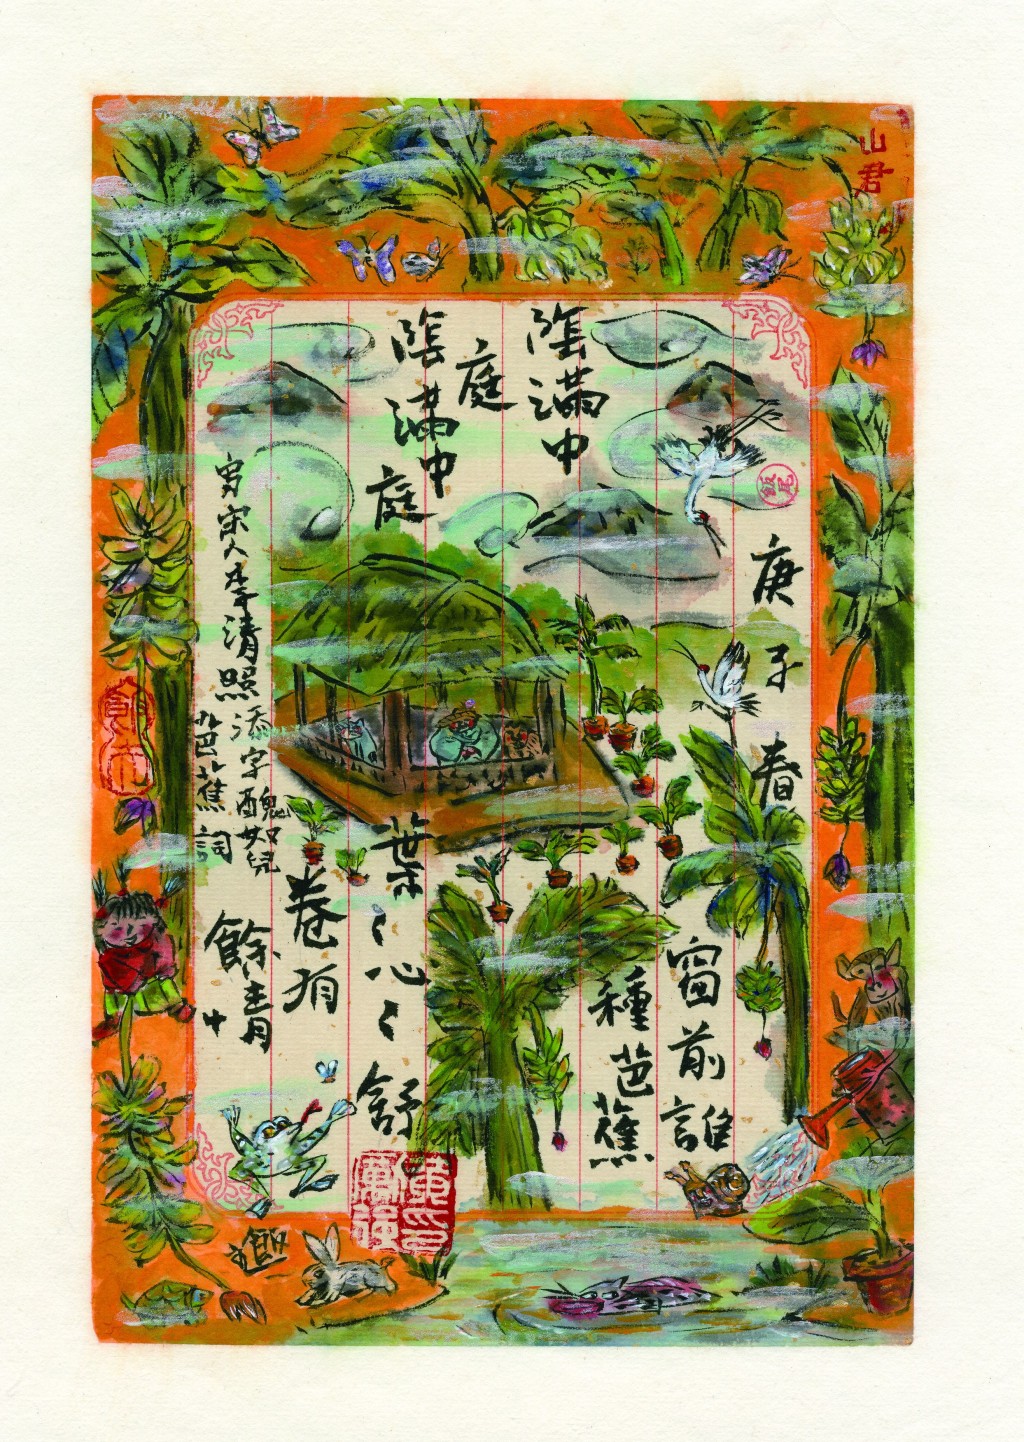 黃勵強的作品結合了中國詩詞文學元素。